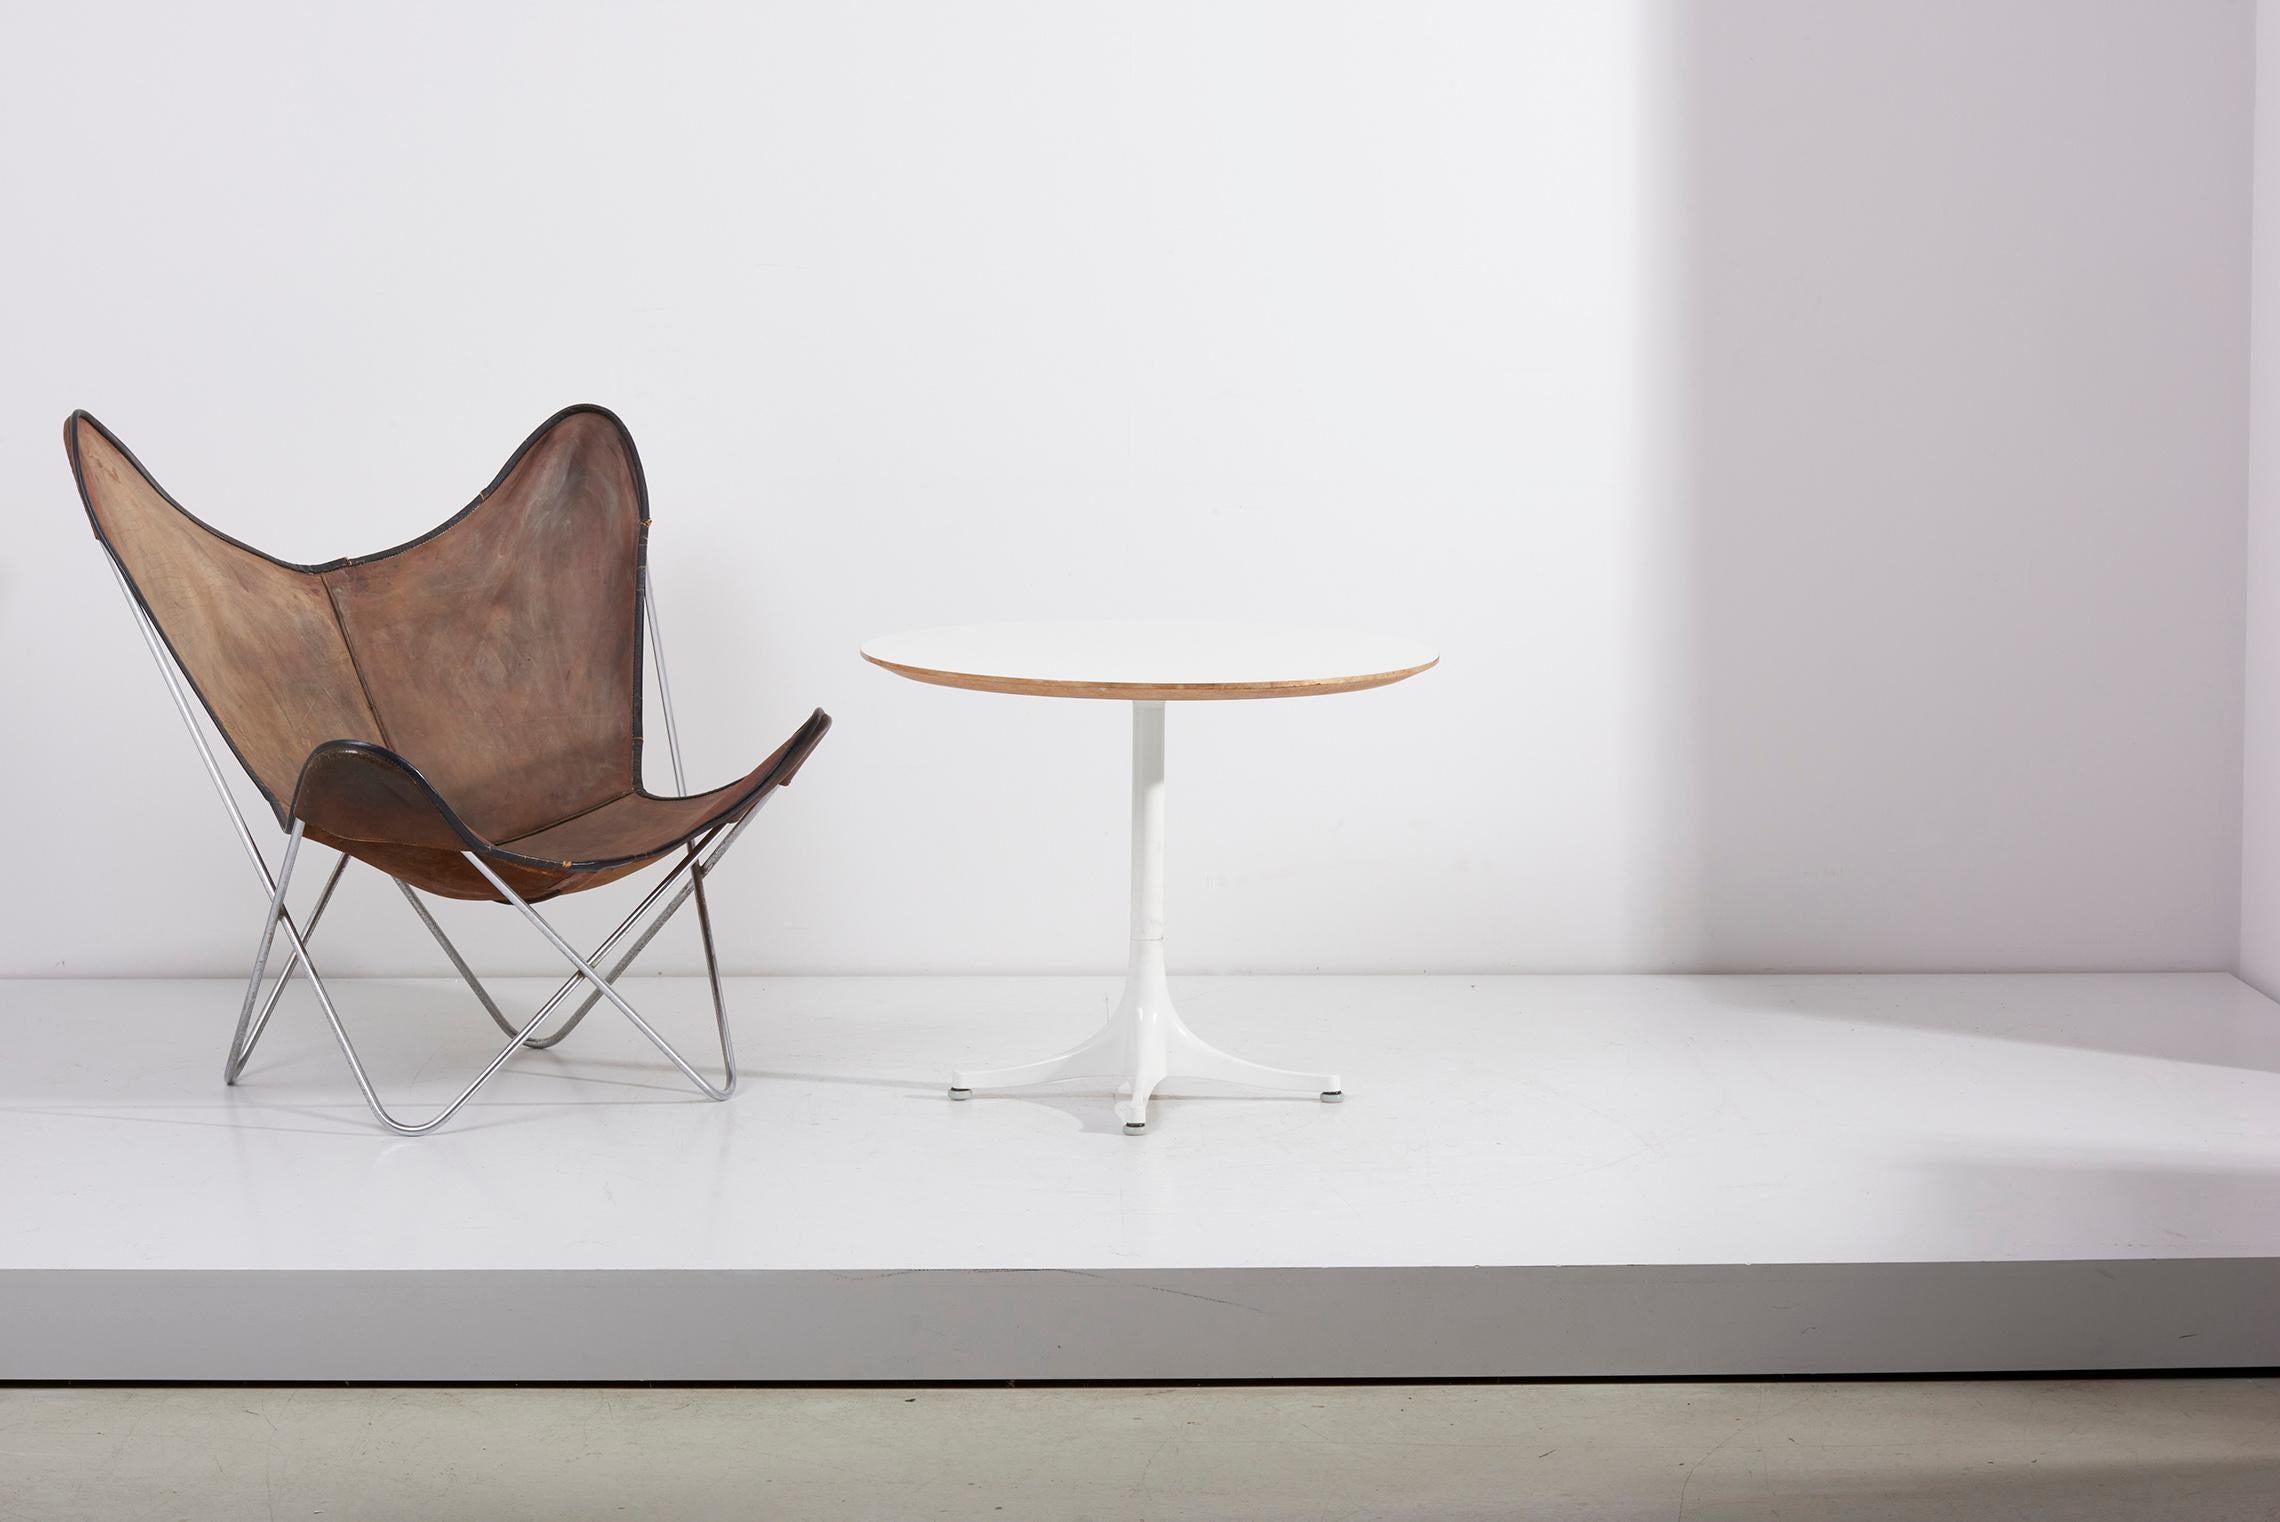 Der berühmte Couchtisch, 1960 von George Nelson für Herman Miller entworfen. Weißer Sockel, weiße Tischplatte. Unterschrieben!

